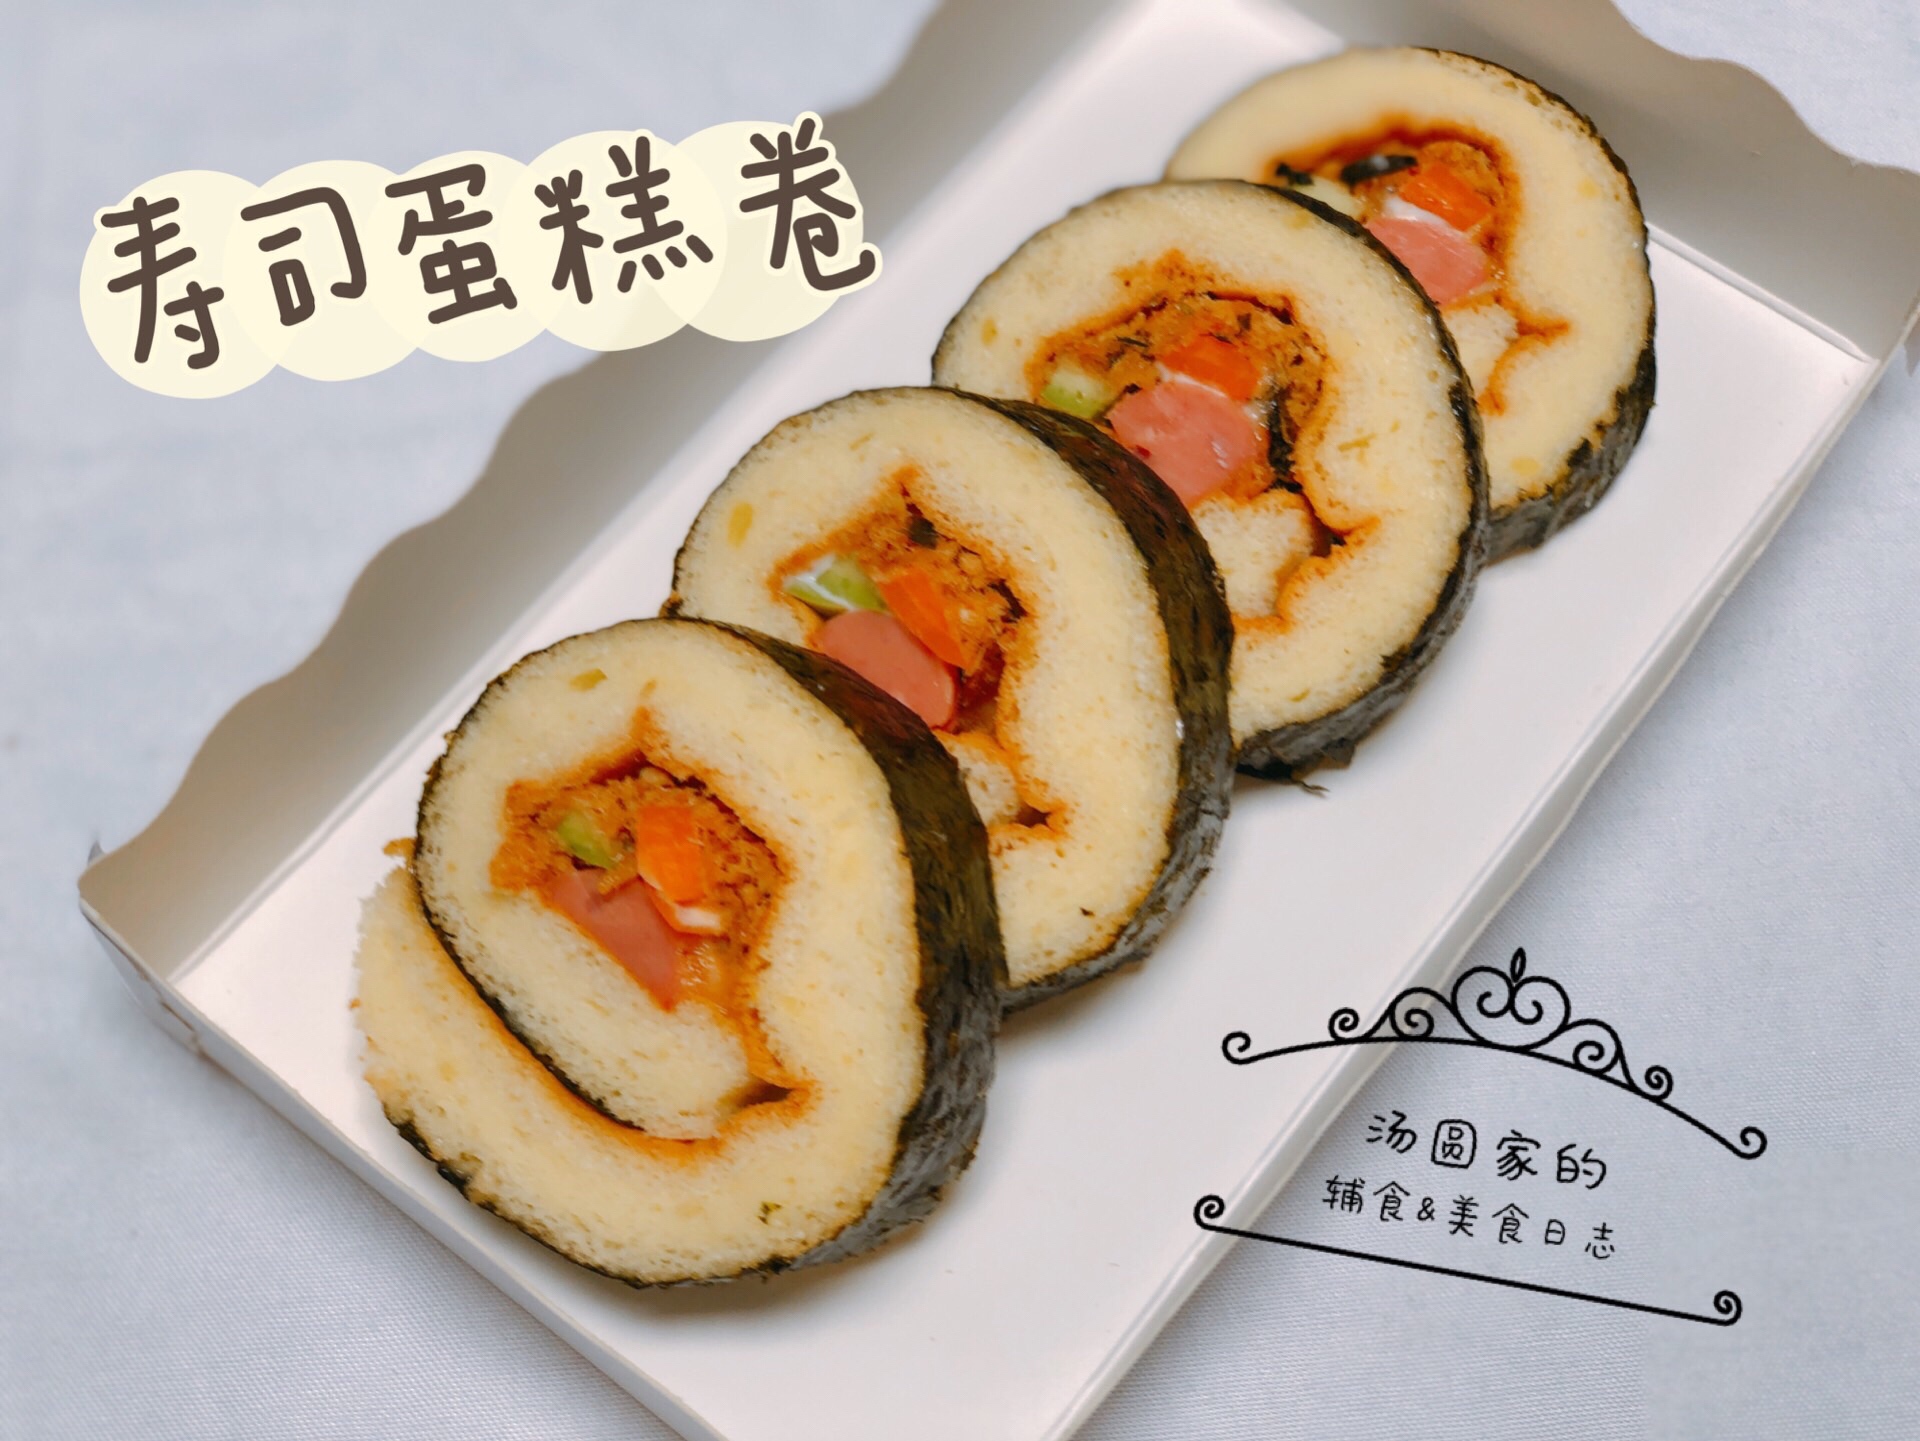 ❣️寿司蛋糕卷🍱朴素的外形、惊艳的味道